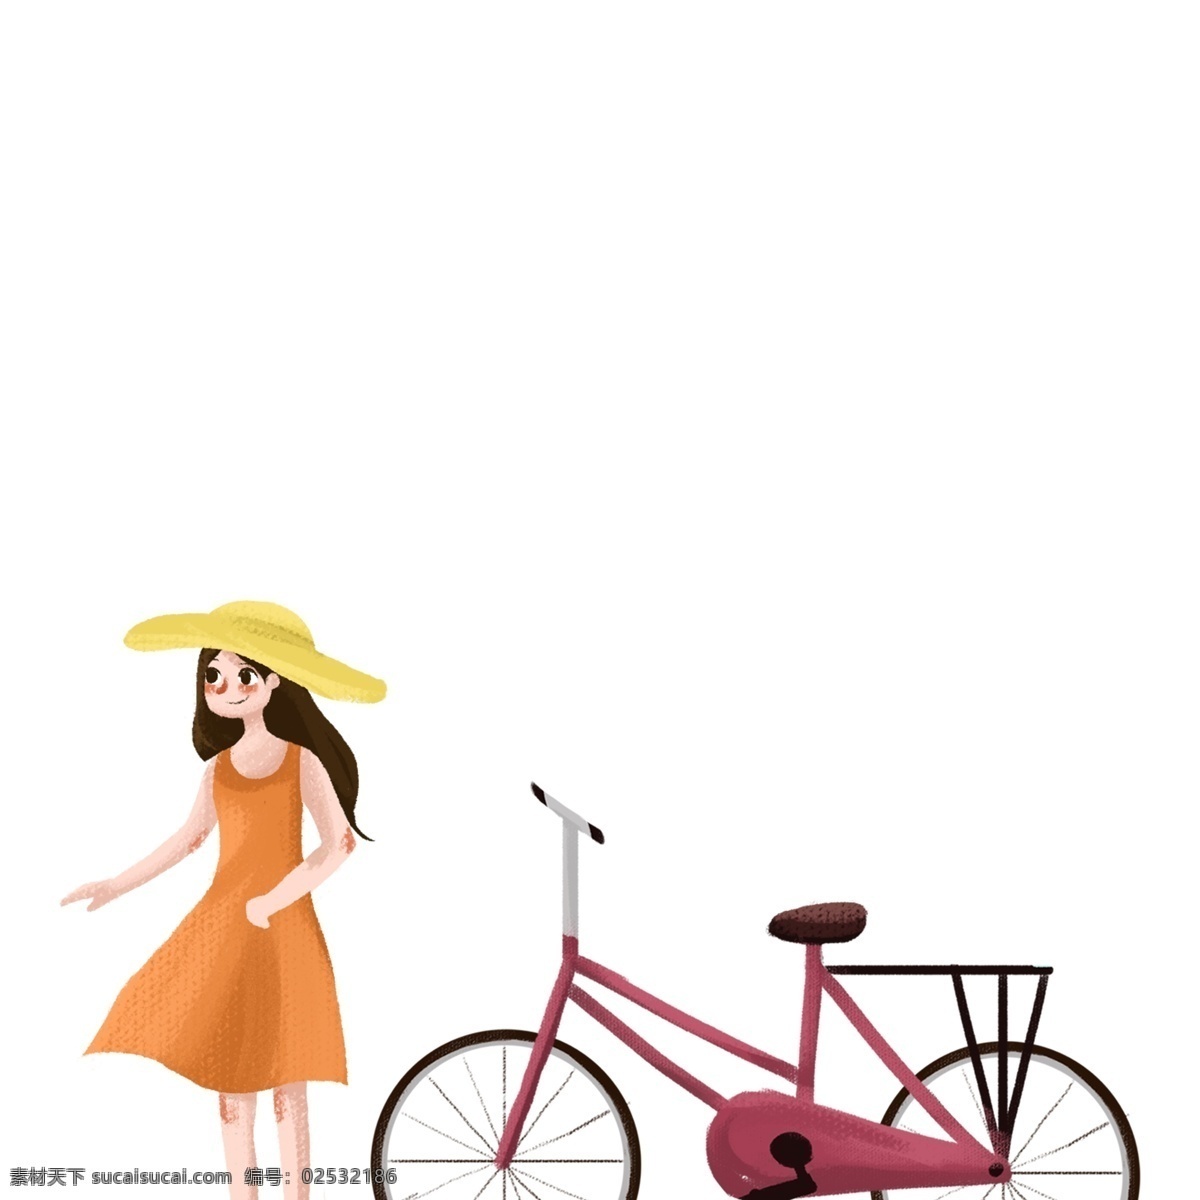 准备 出去 骑 单车 女孩 免 扣 图 骑单车出去 女孩免扣图 橙色连衣裙 戴帽子的女人 红色单车 长头发 戴草帽的